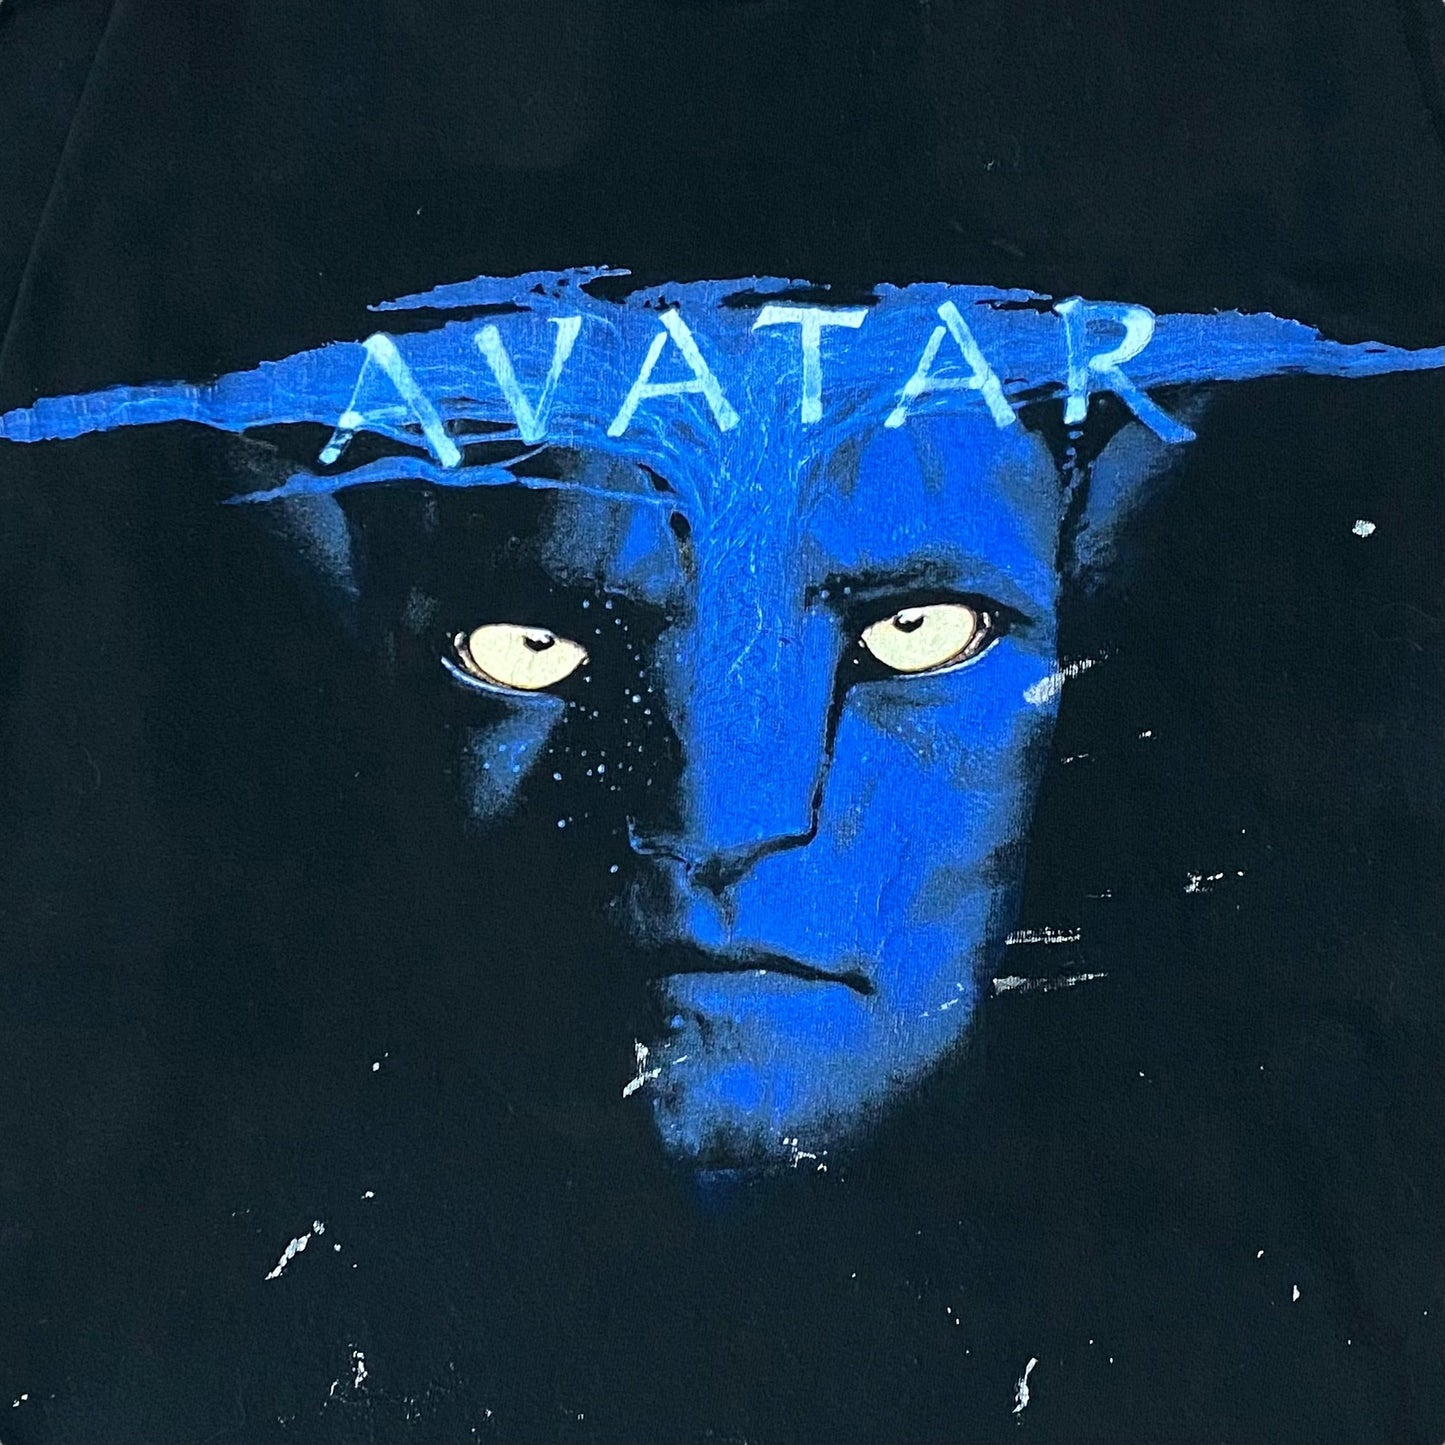 00's "AVATAR" Movie t-shirt